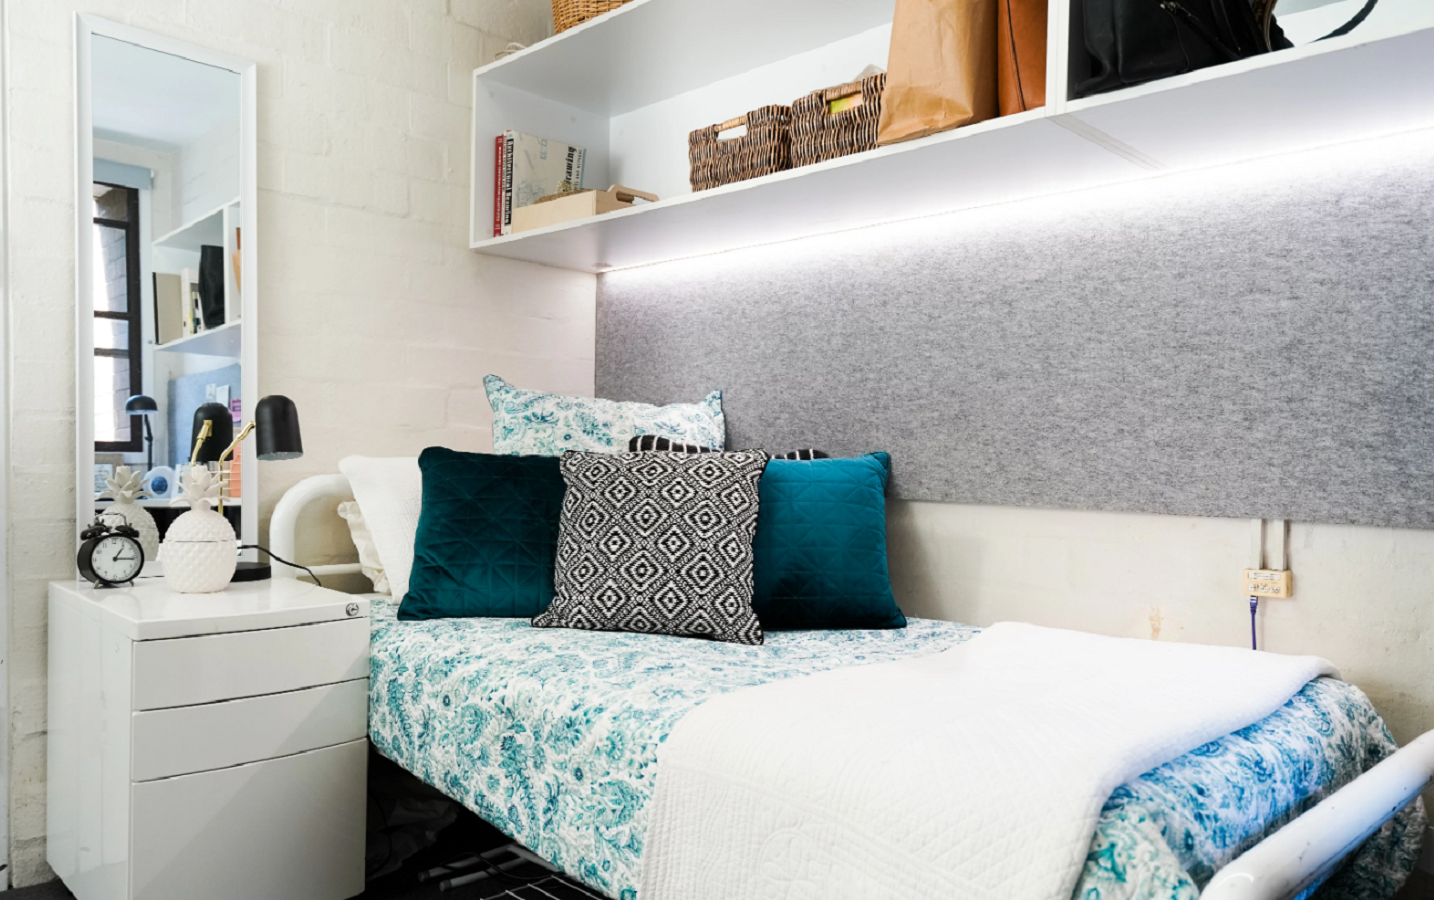 4 увлекательных идеи спальни для гостей - дизайн идеальной комнаты для гостей